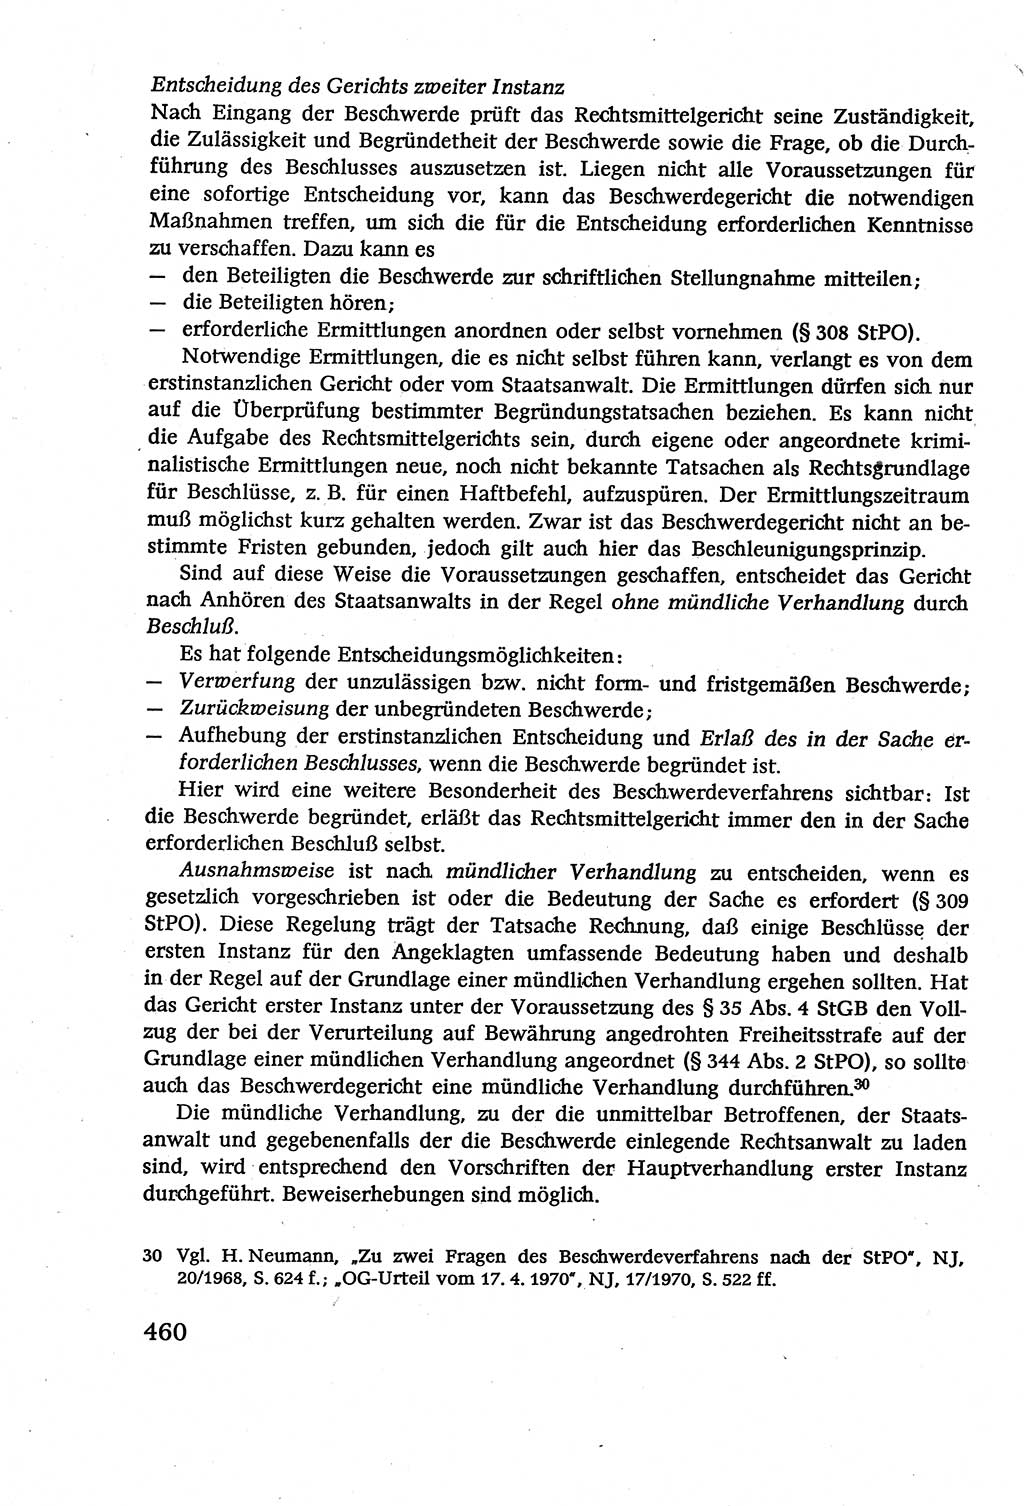 Strafverfahrensrecht [Deutsche Demokratische Republik (DDR)], Lehrbuch 1977, Seite 460 (Strafverf.-R. DDR Lb. 1977, S. 460)